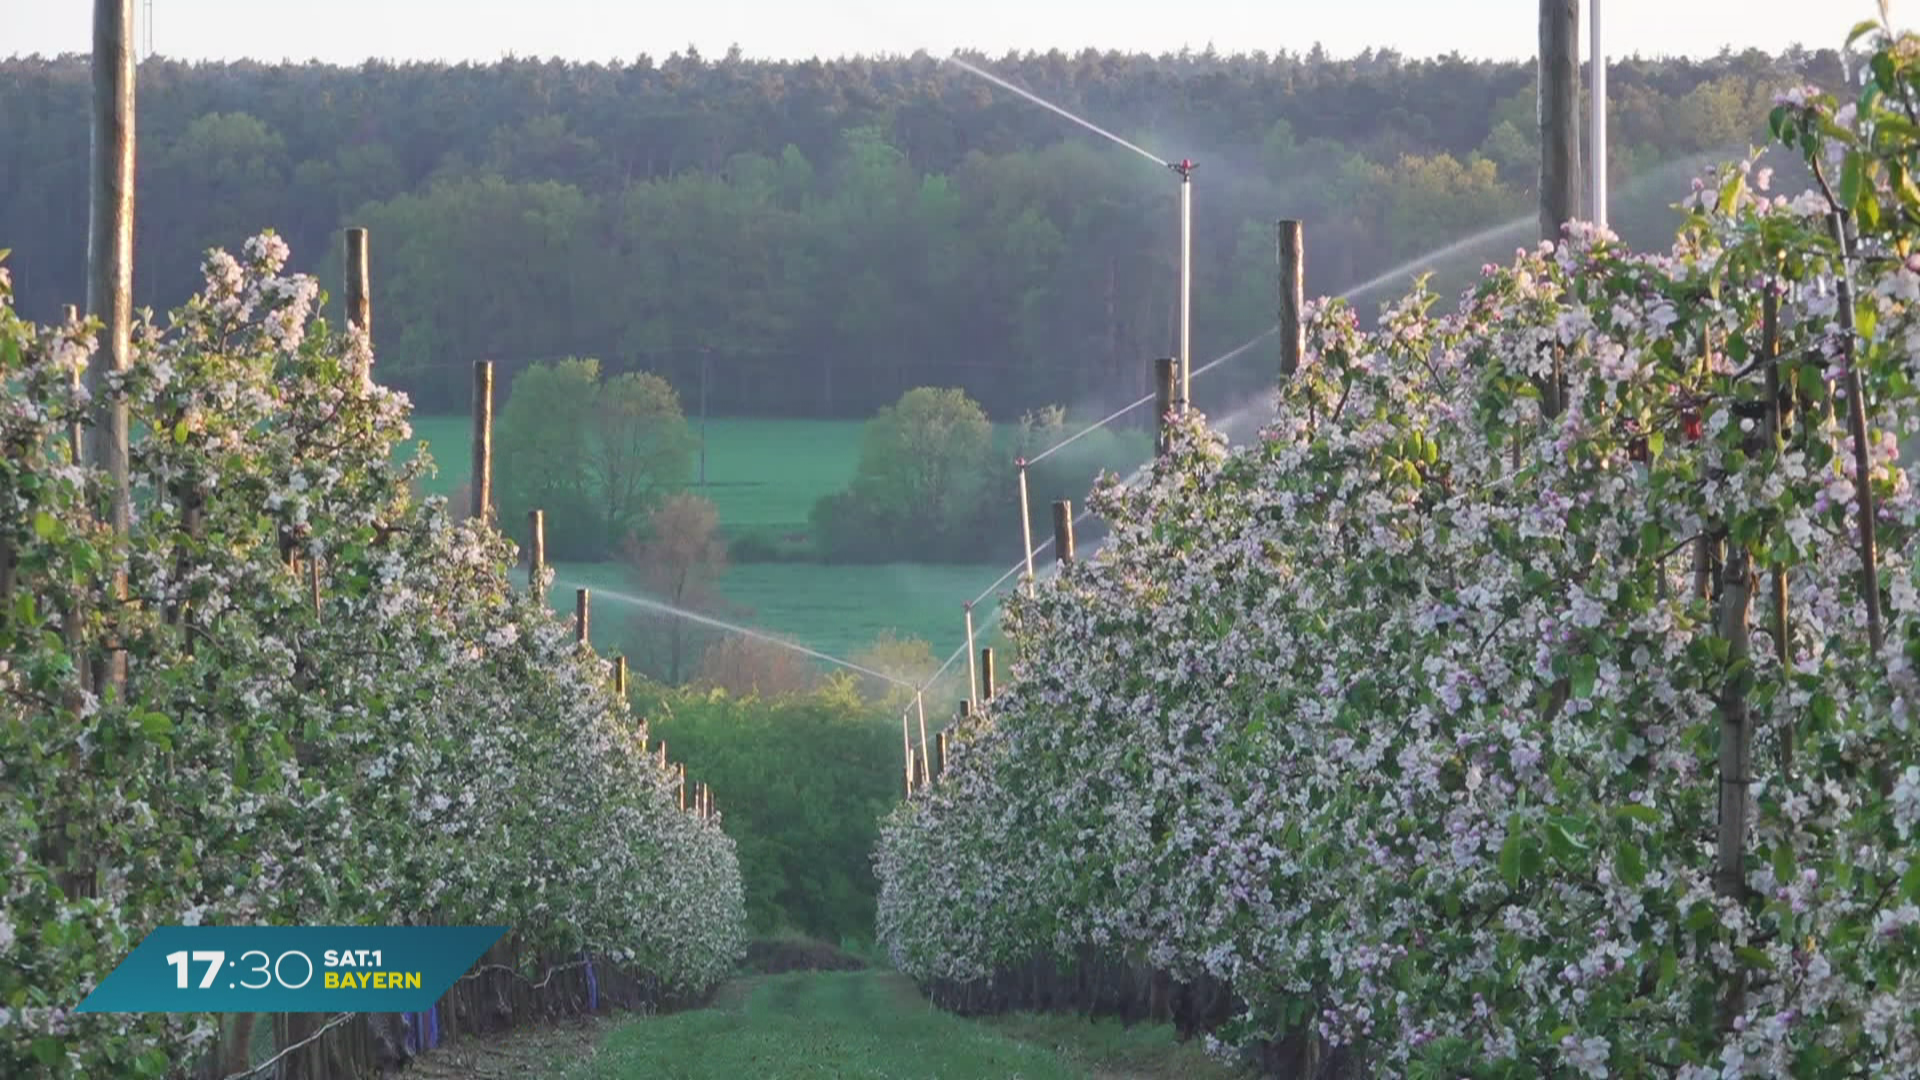 Frostbewässerung in Bayern: Blüten vor kalten Temperaturen schützen